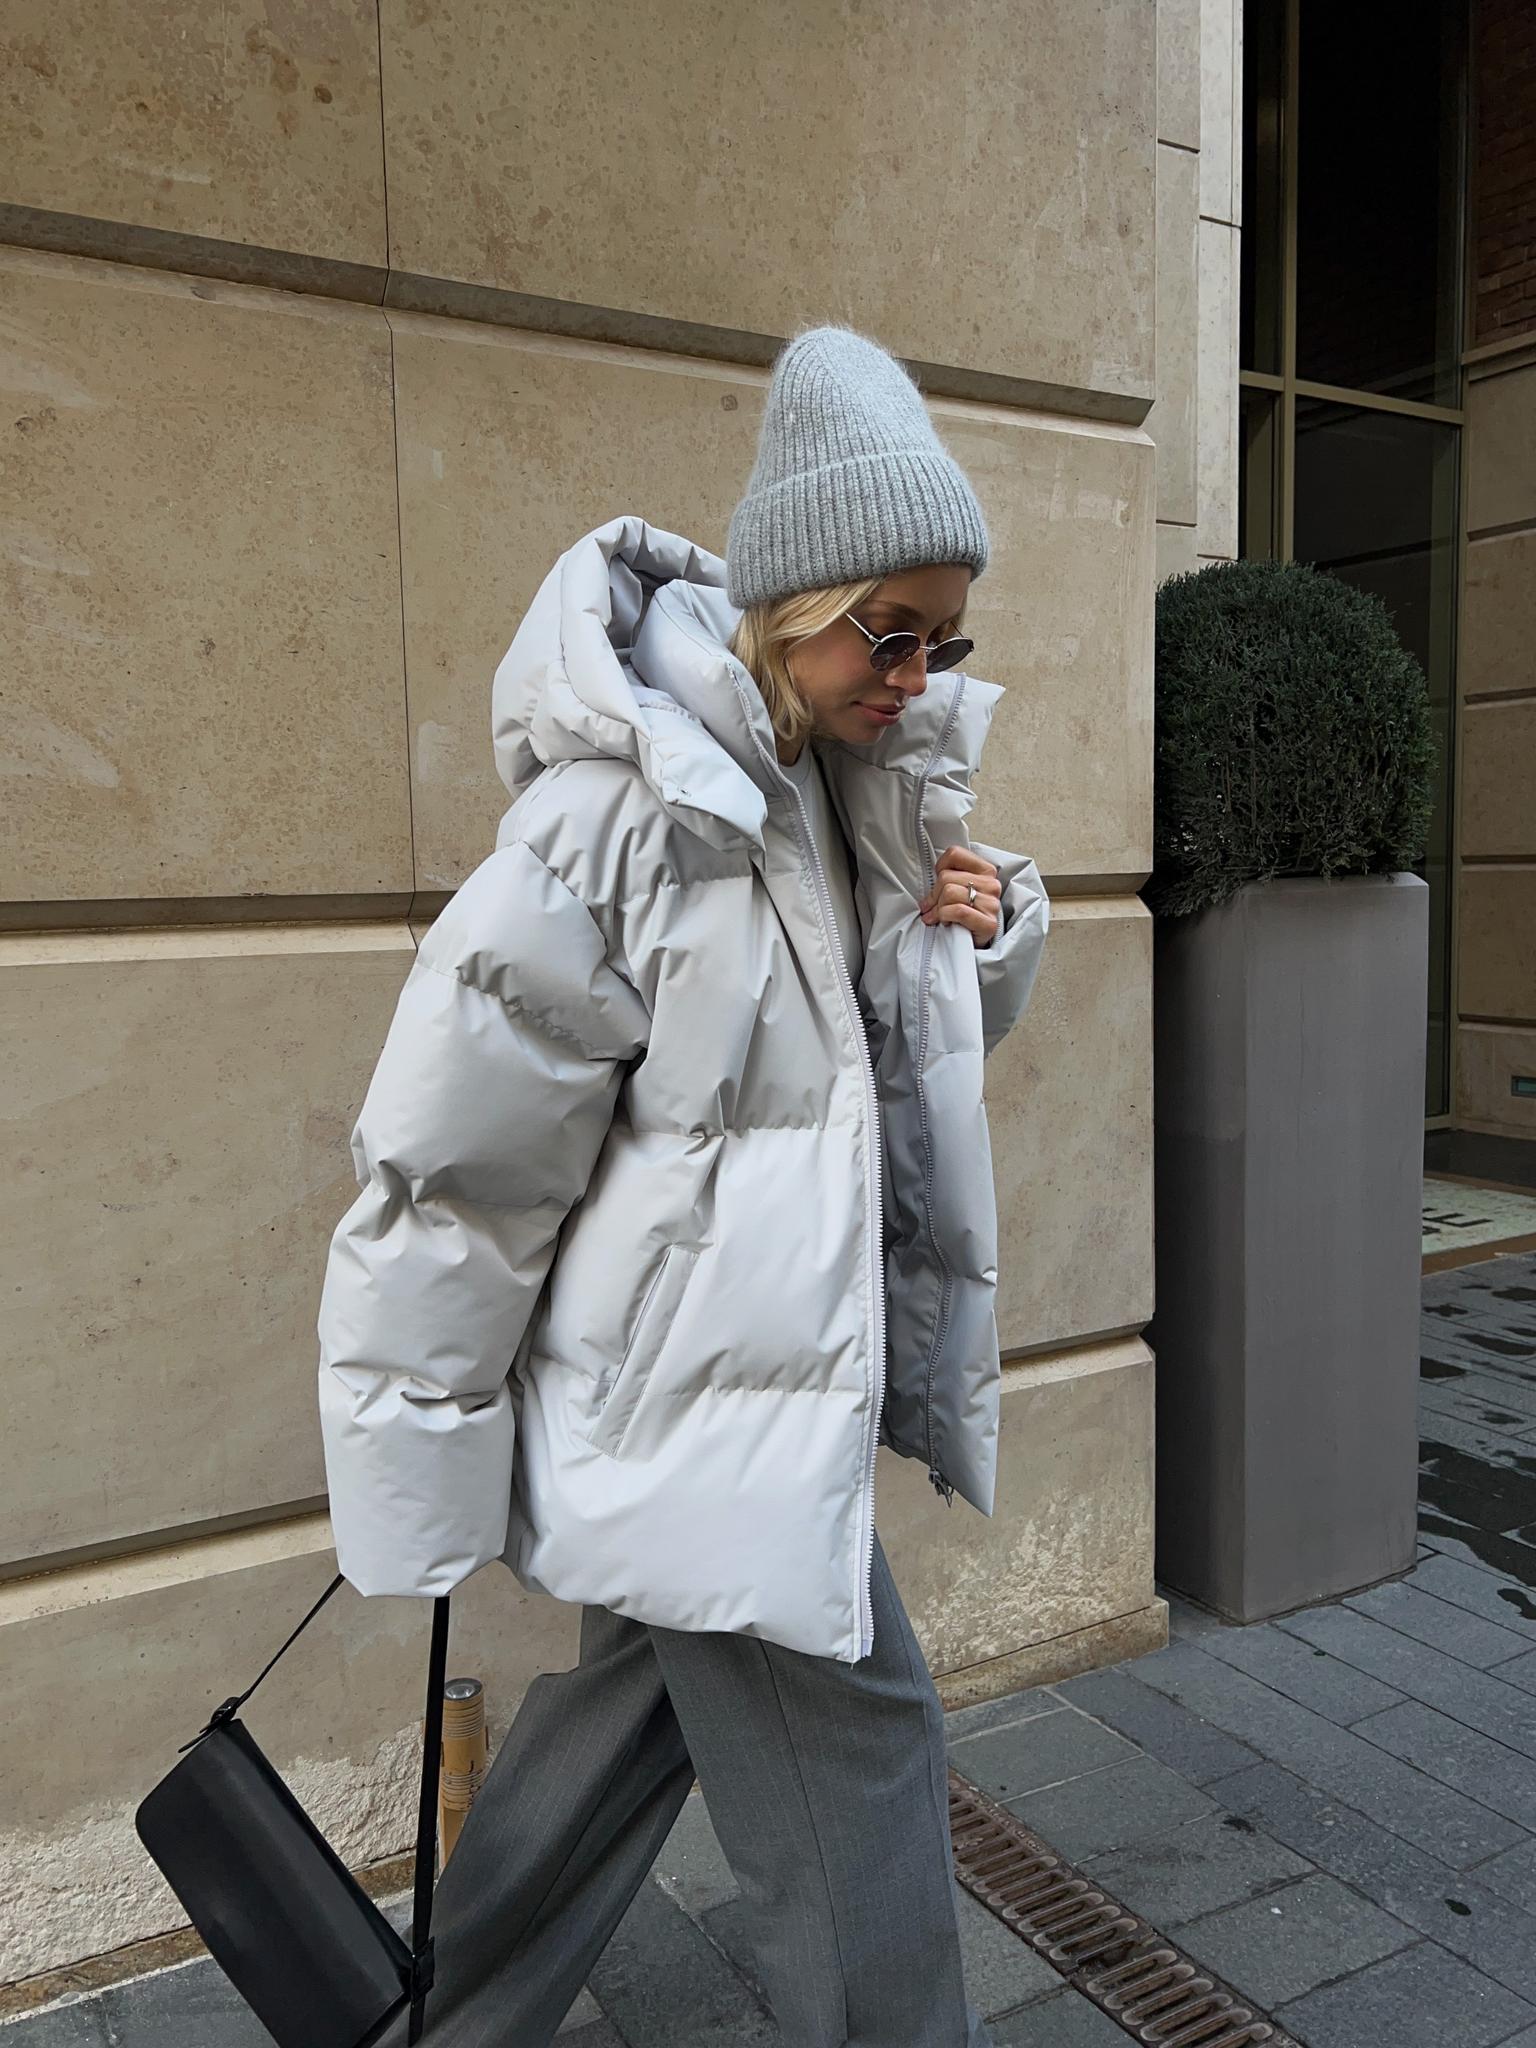 ВЕРХНЯЯ ОДЕЖДА \u003e Зимняя стёганная куртка с капюшоном пепельного цветакупить в интернет-магазине